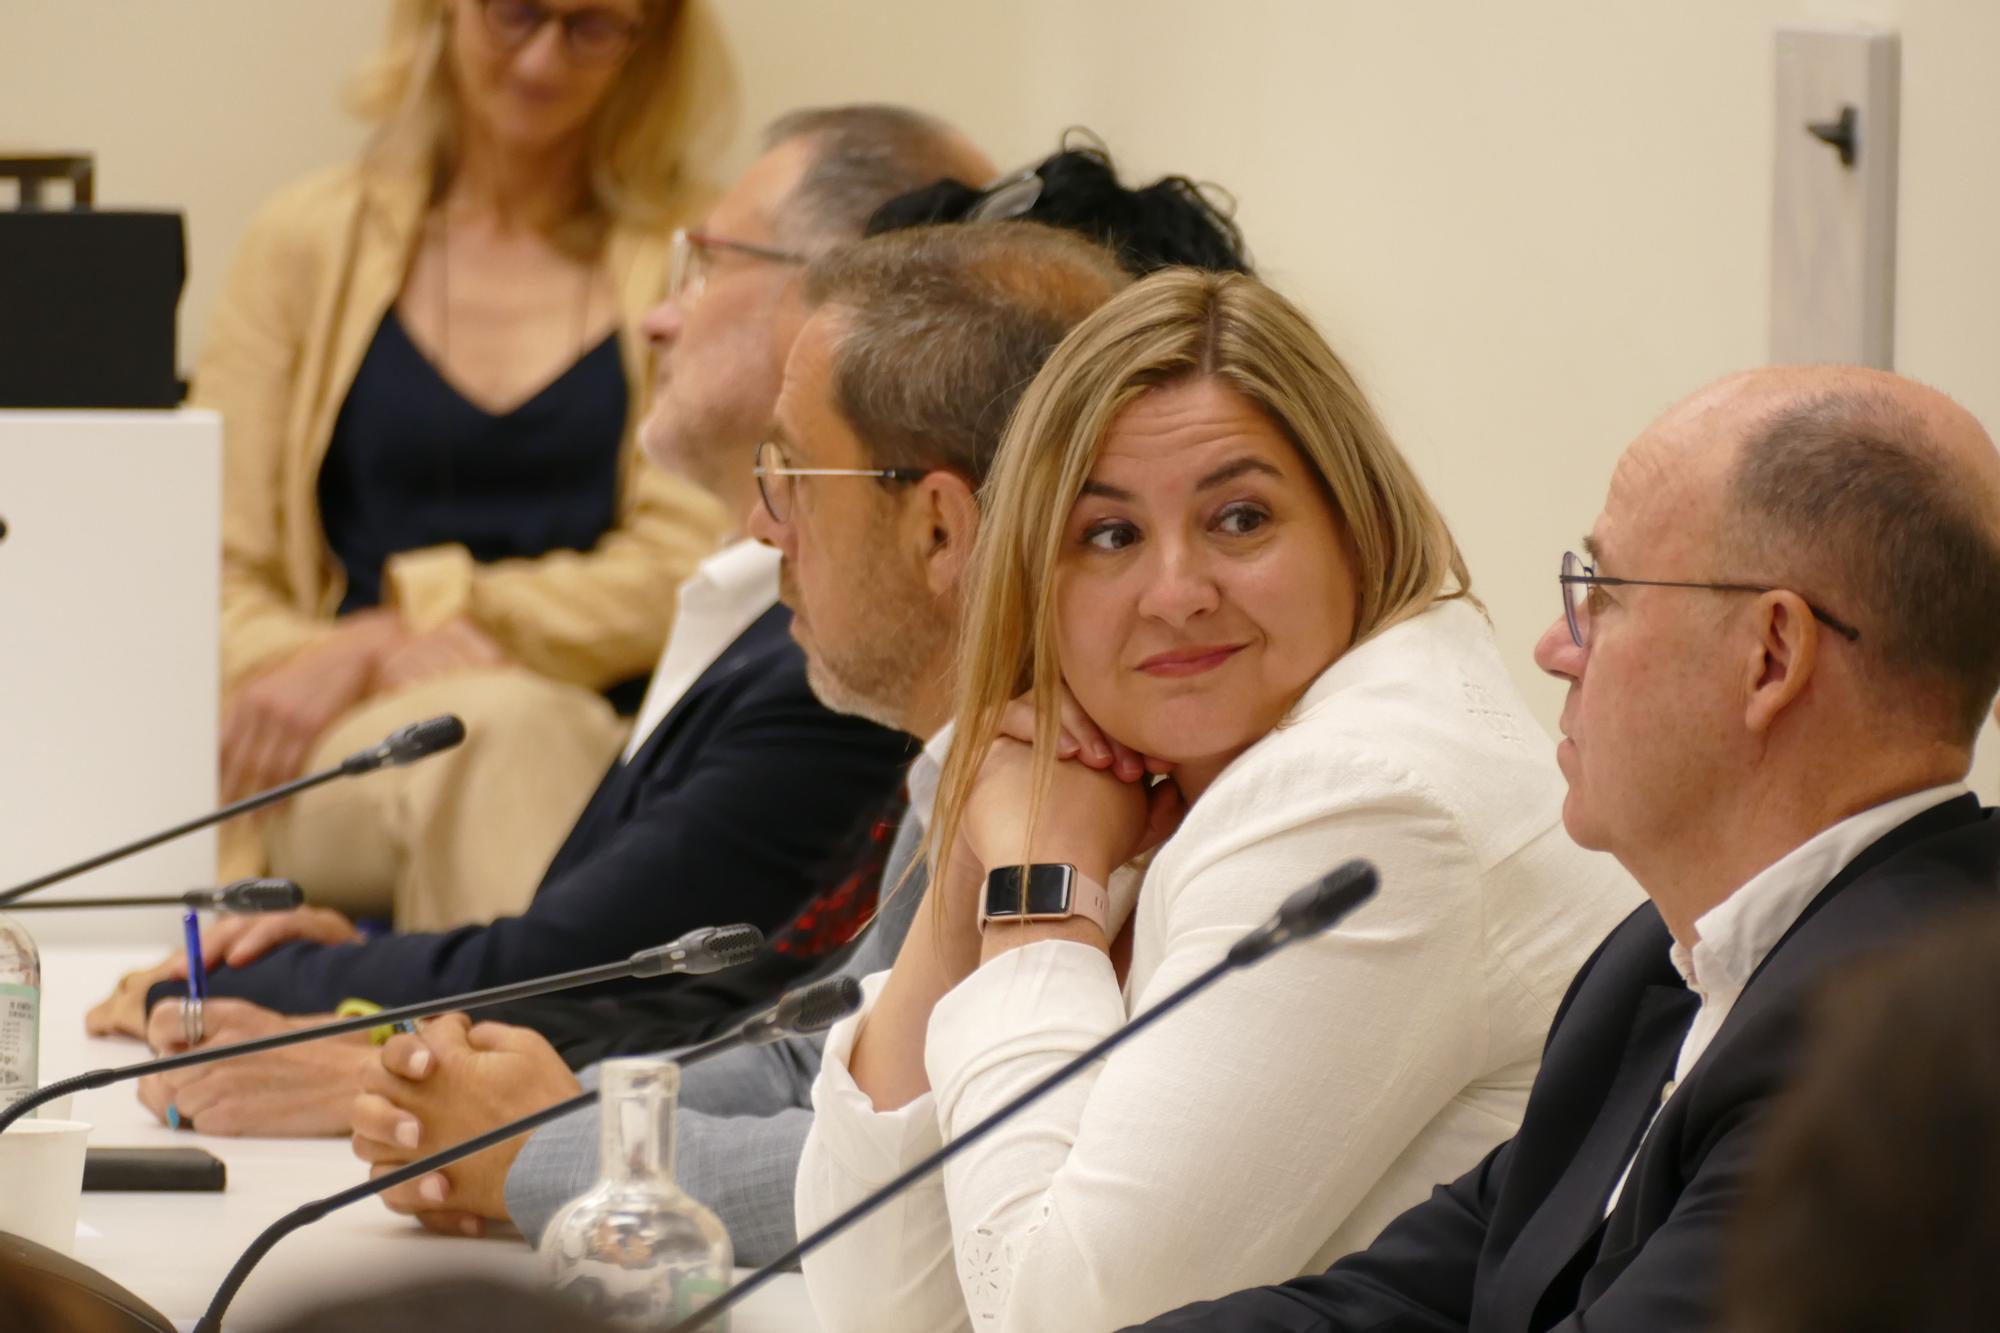 Les imatges de la presa de possessió de Jordi Masquef com a alcalde de Figueres